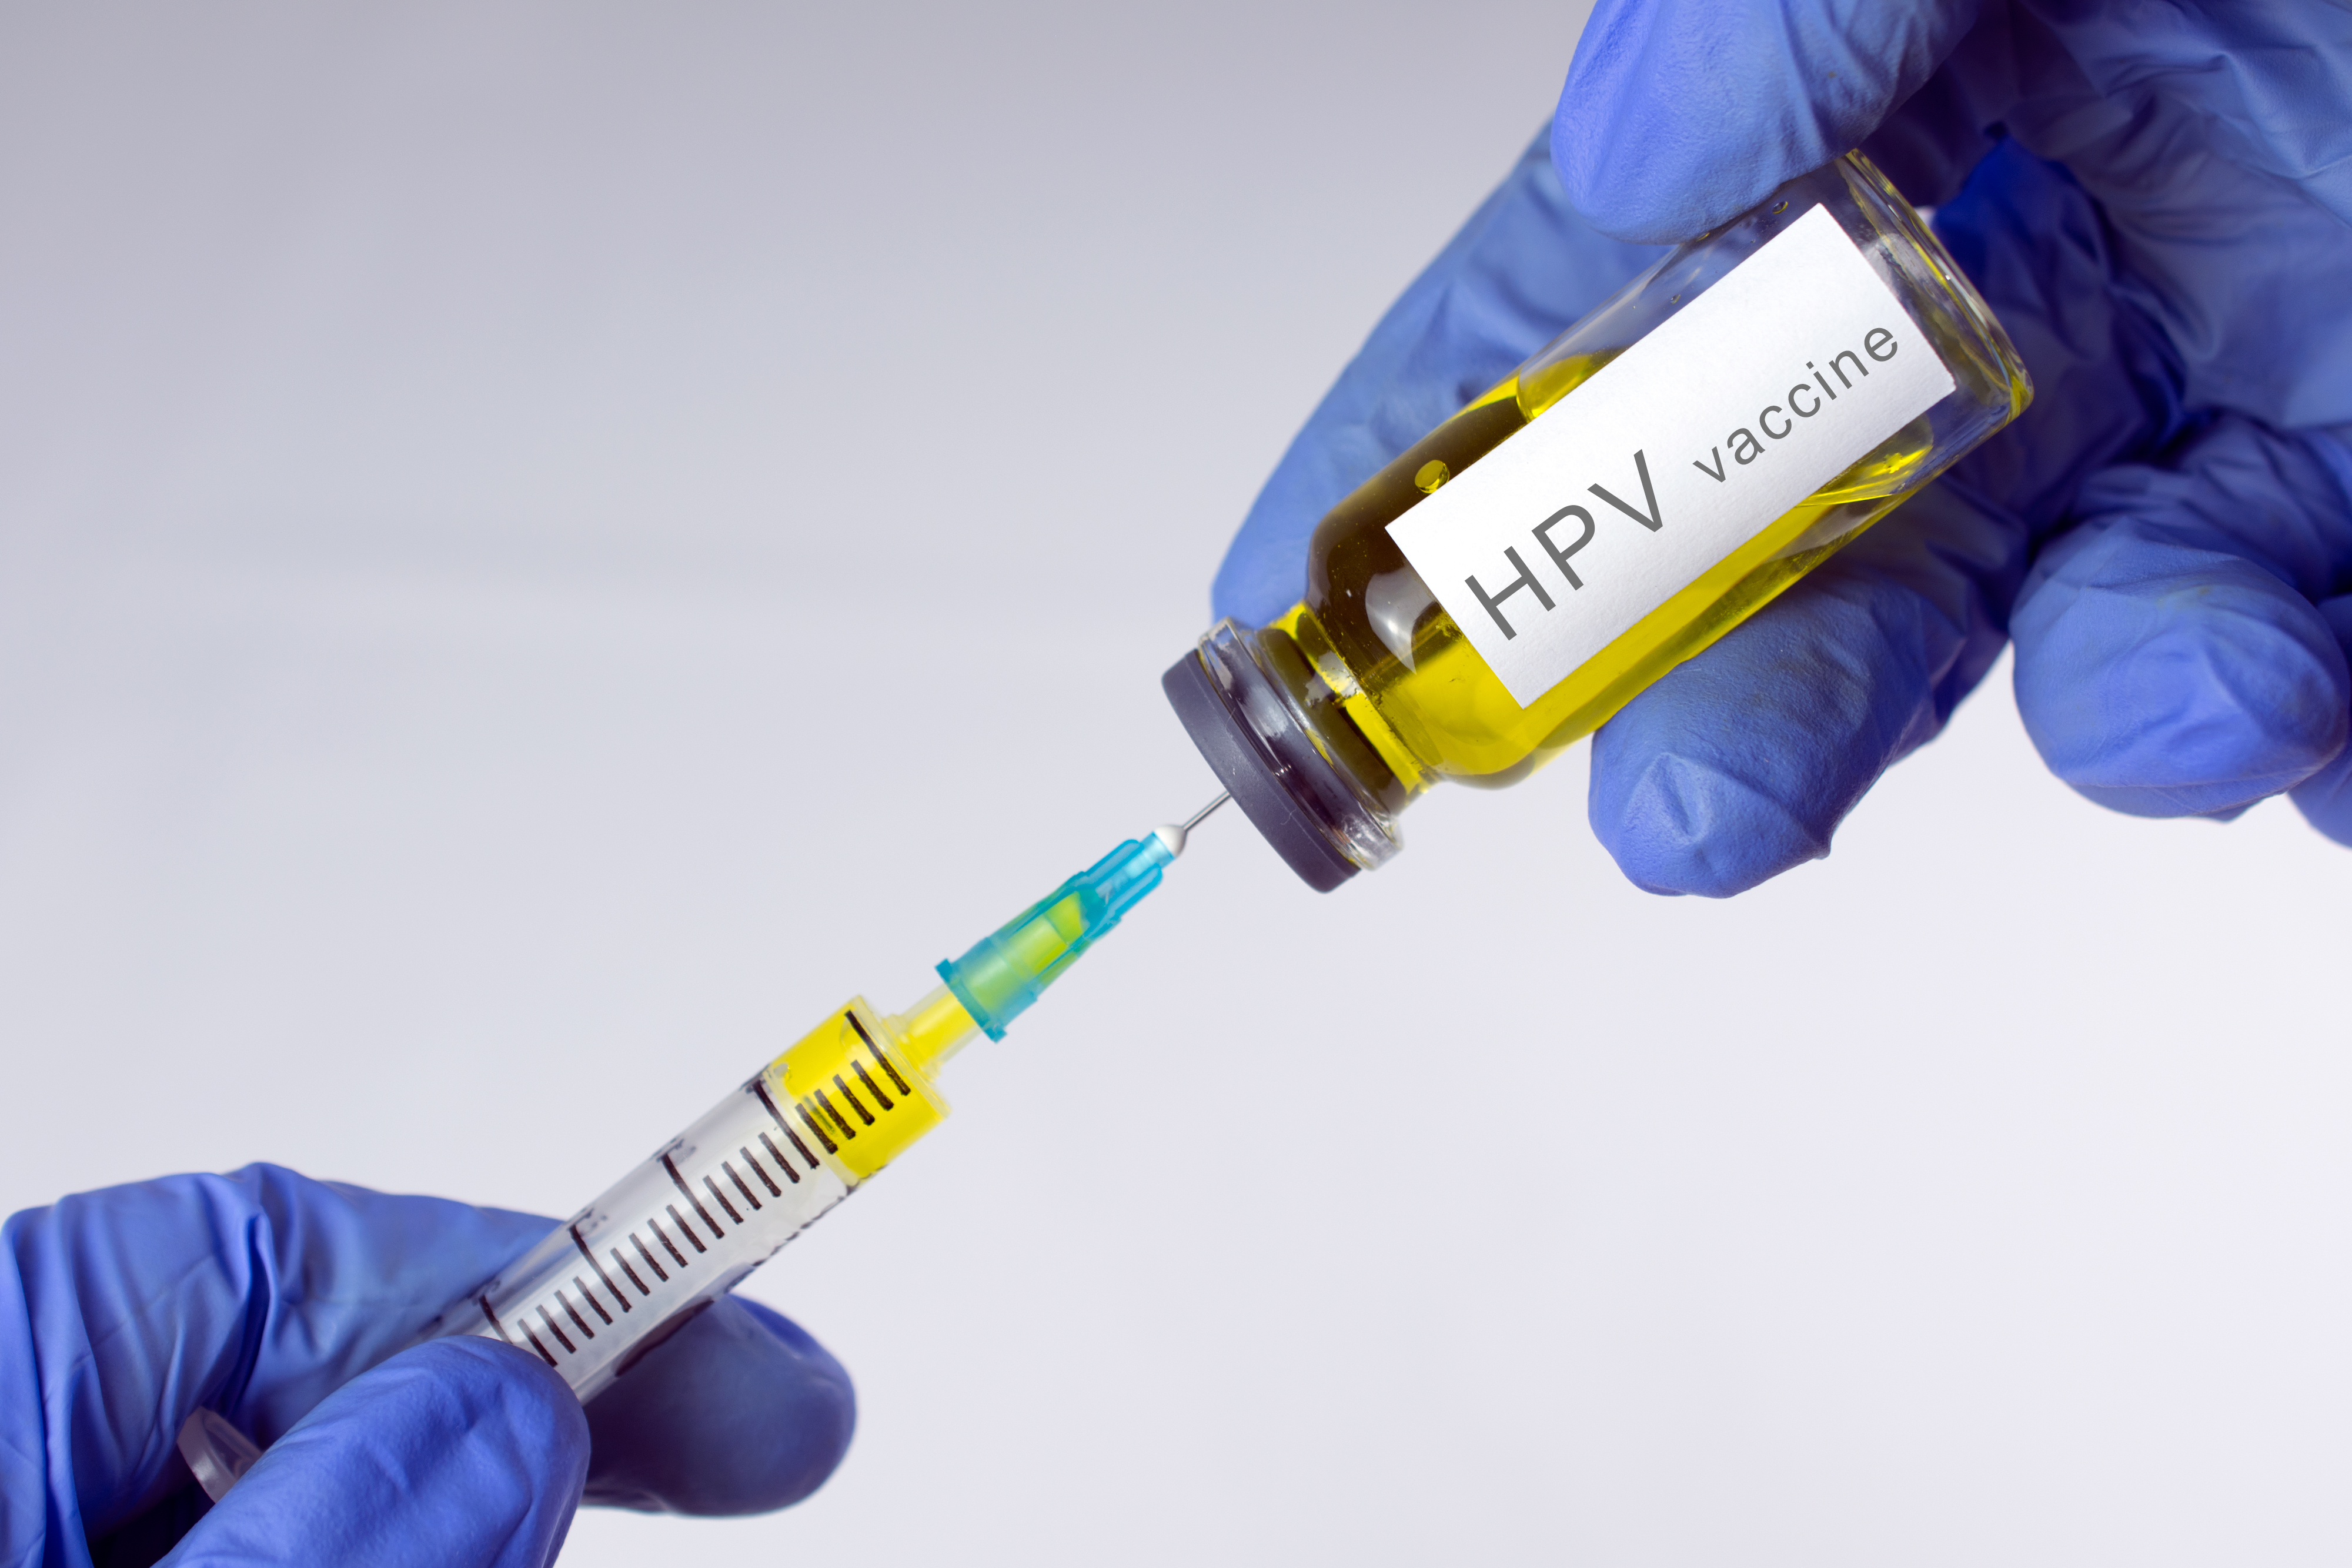 vaccinul anti papilomavirus uman preț